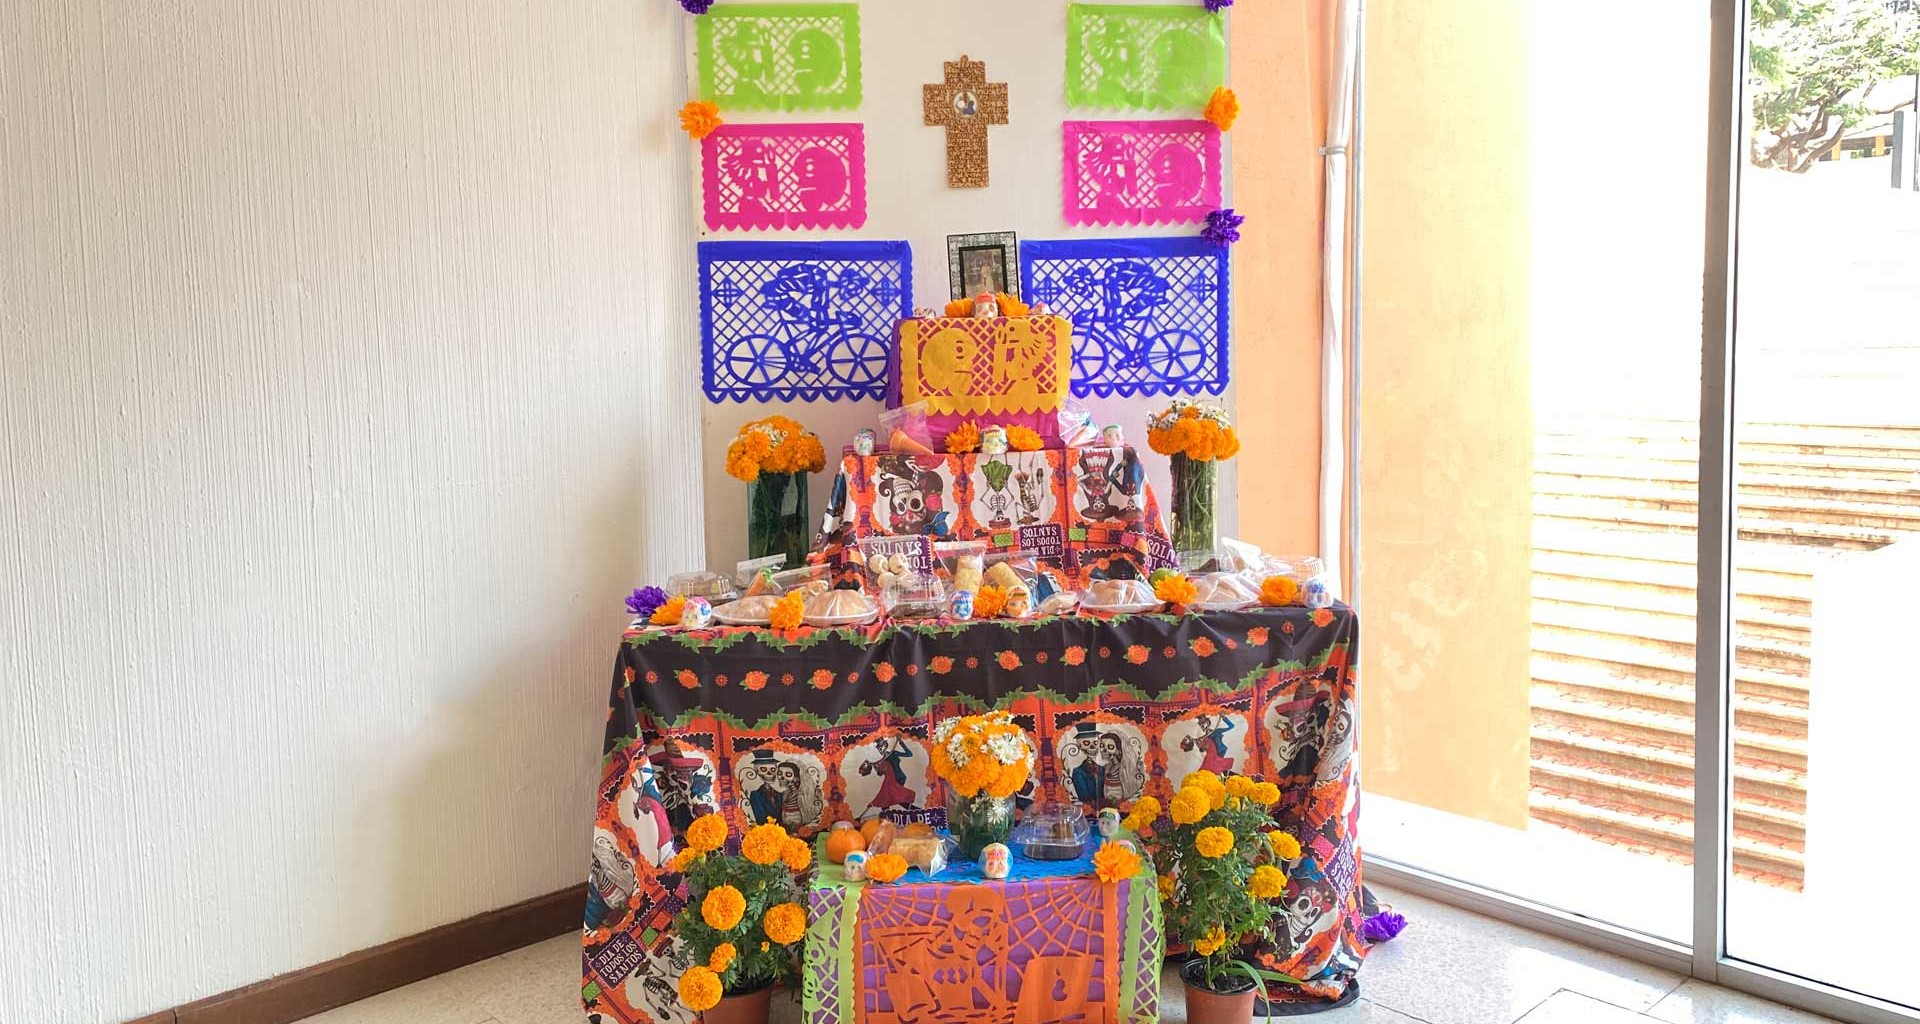 Altar-campus-chiapas-comunidad-kresko